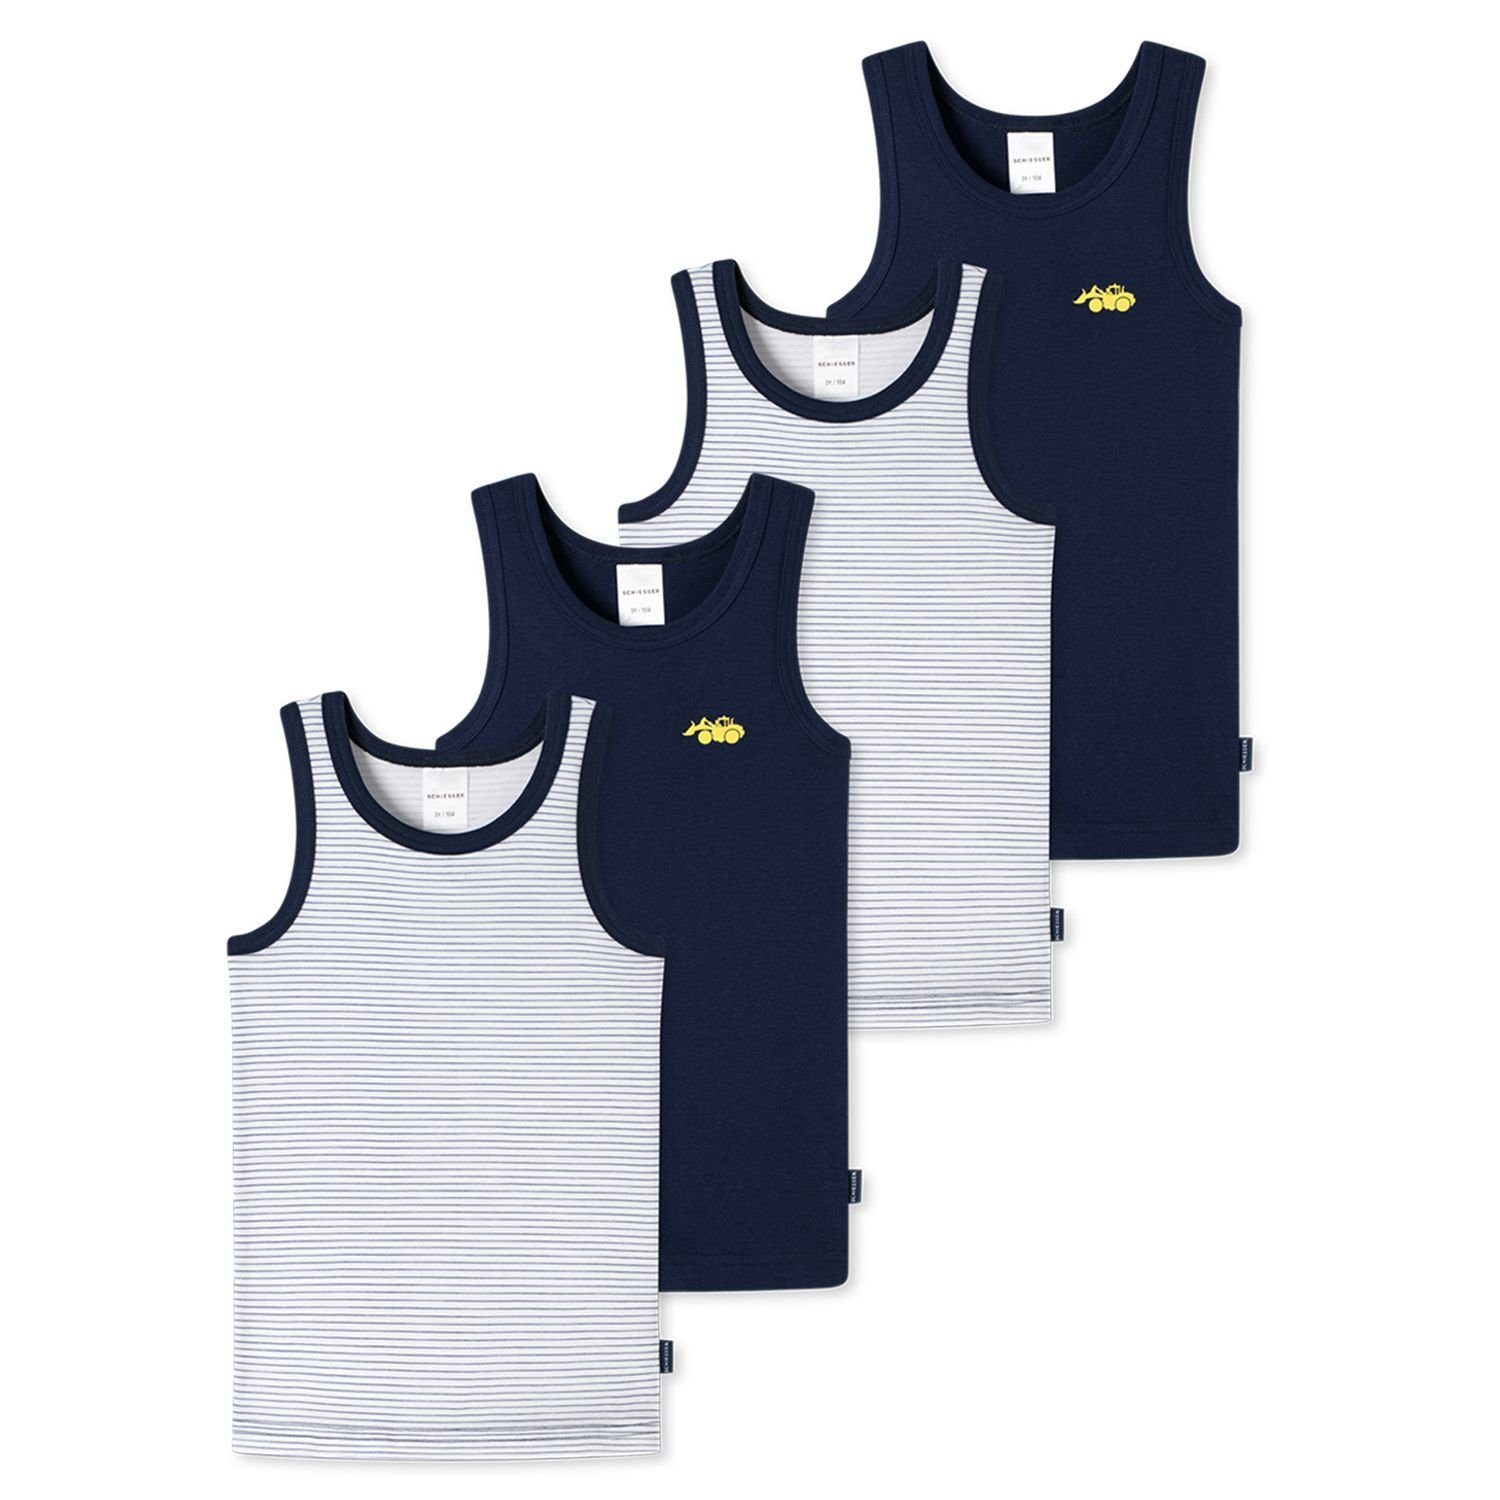 Schiesser Unterhemd (Mehrpack, 4-St., 4er Pack) 100% Baumwolle, nachhaltig, atmungsaktiv, im 4er Pack 912 farbig sortiert